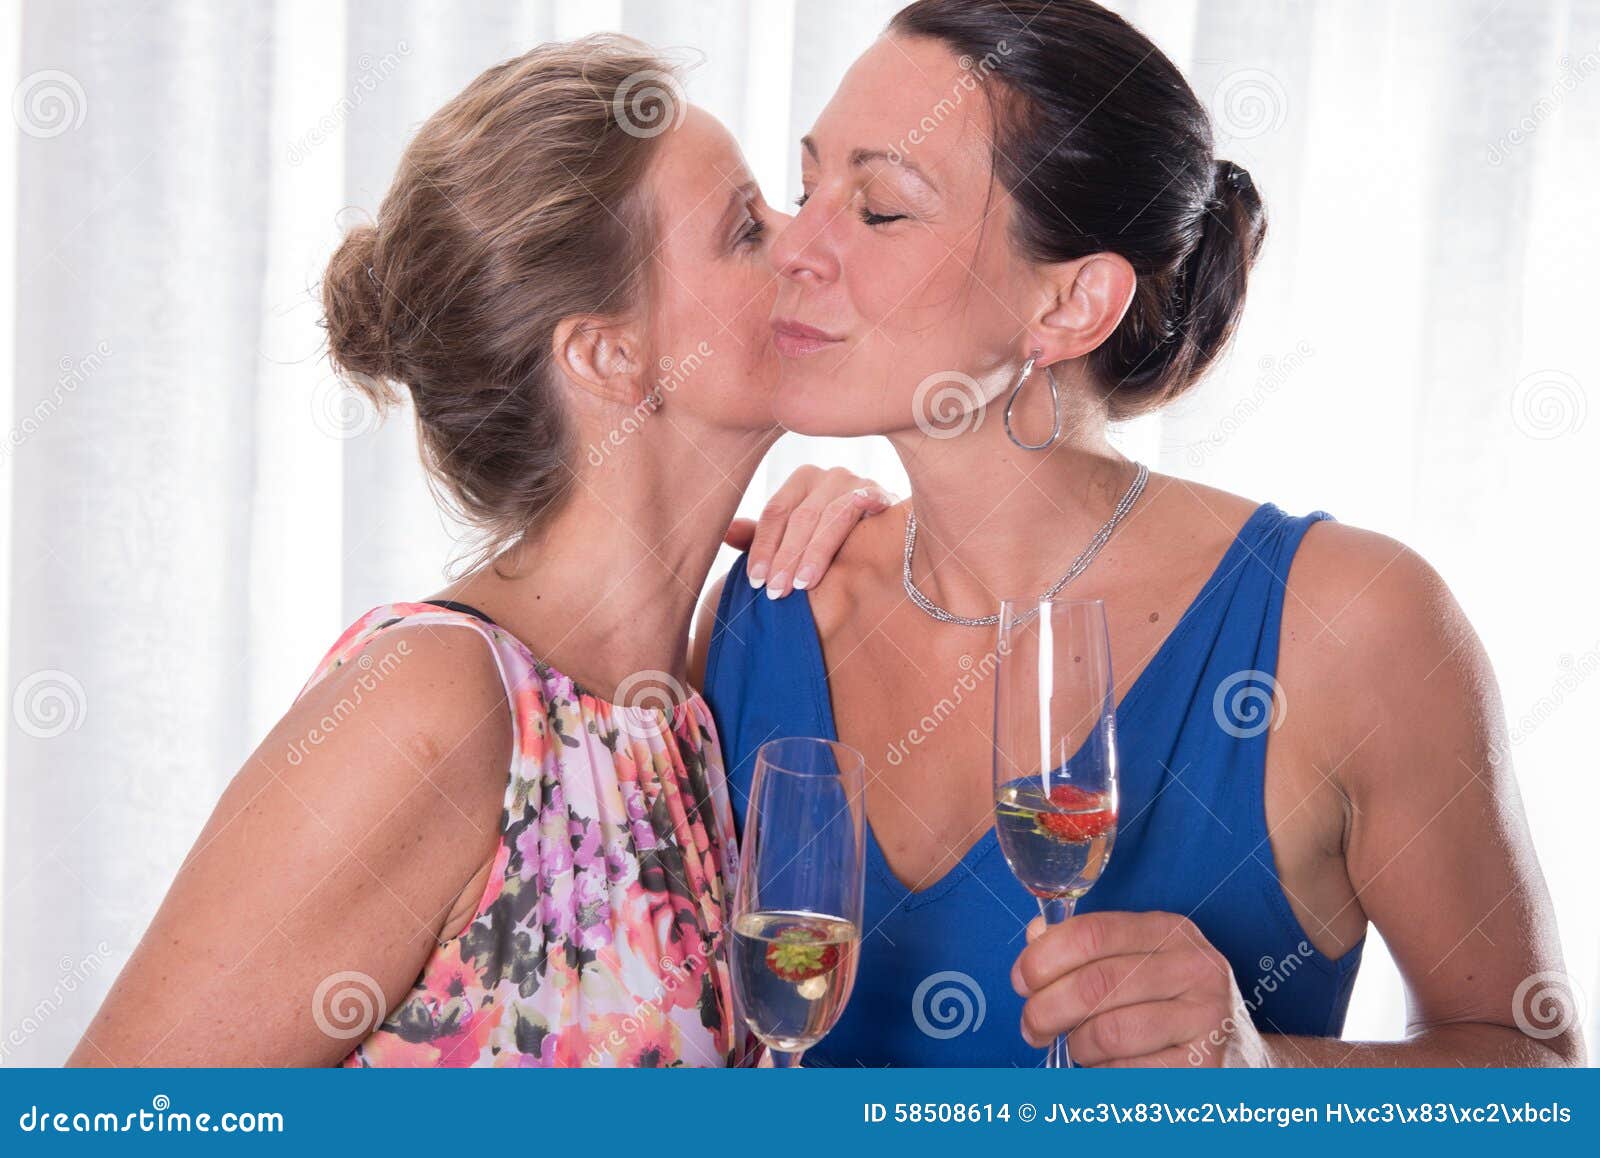 Lesbians Girls Kissing Naked